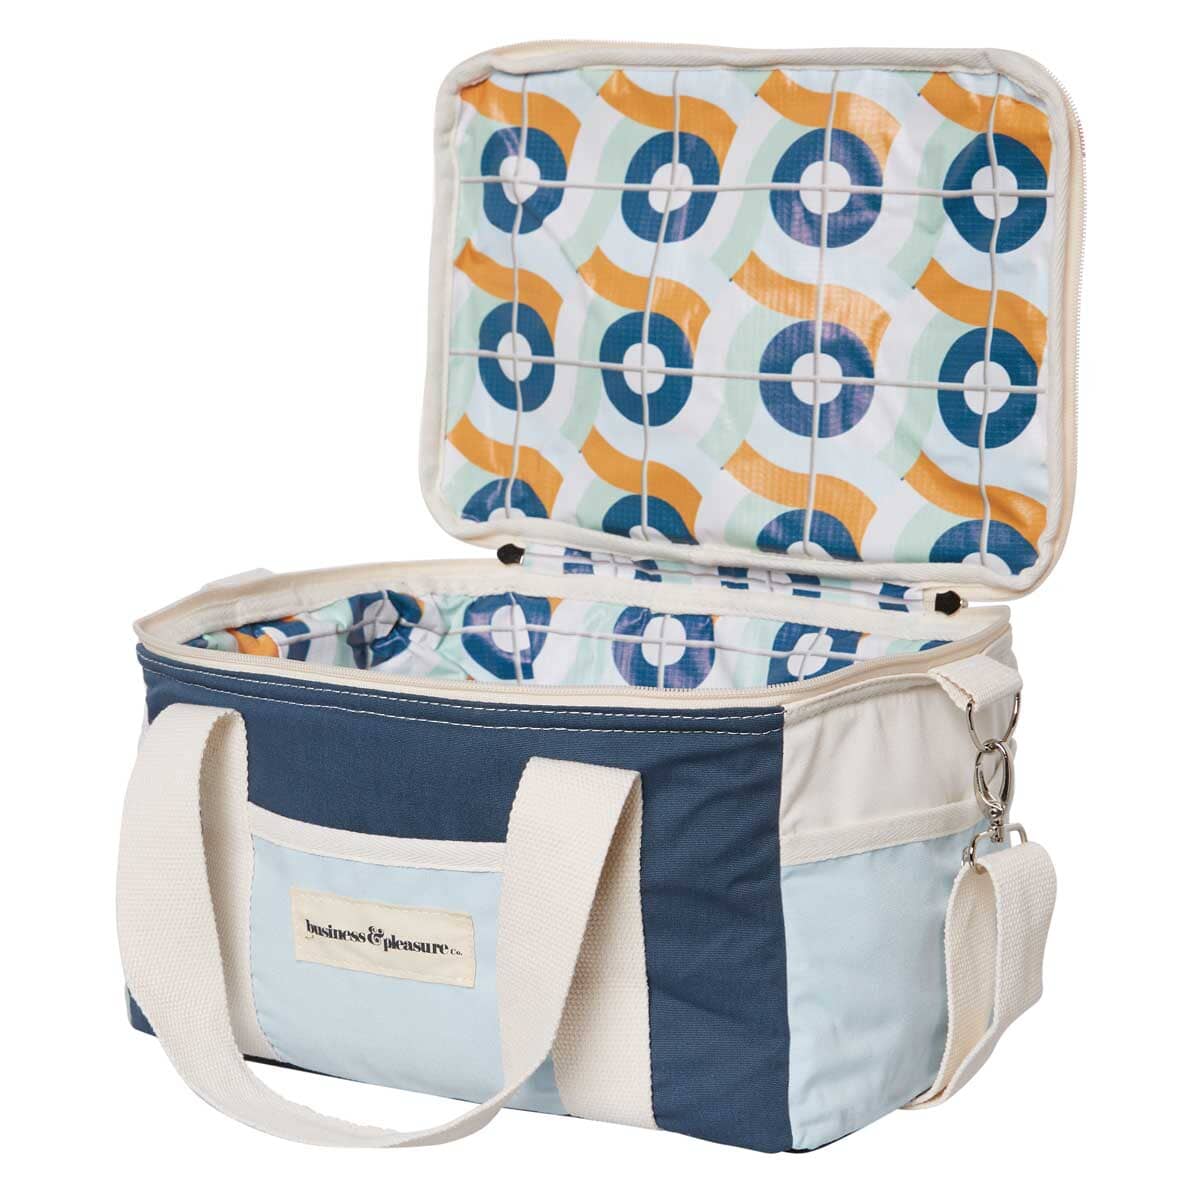 The Premium Cooler Bag - 70s Santorini